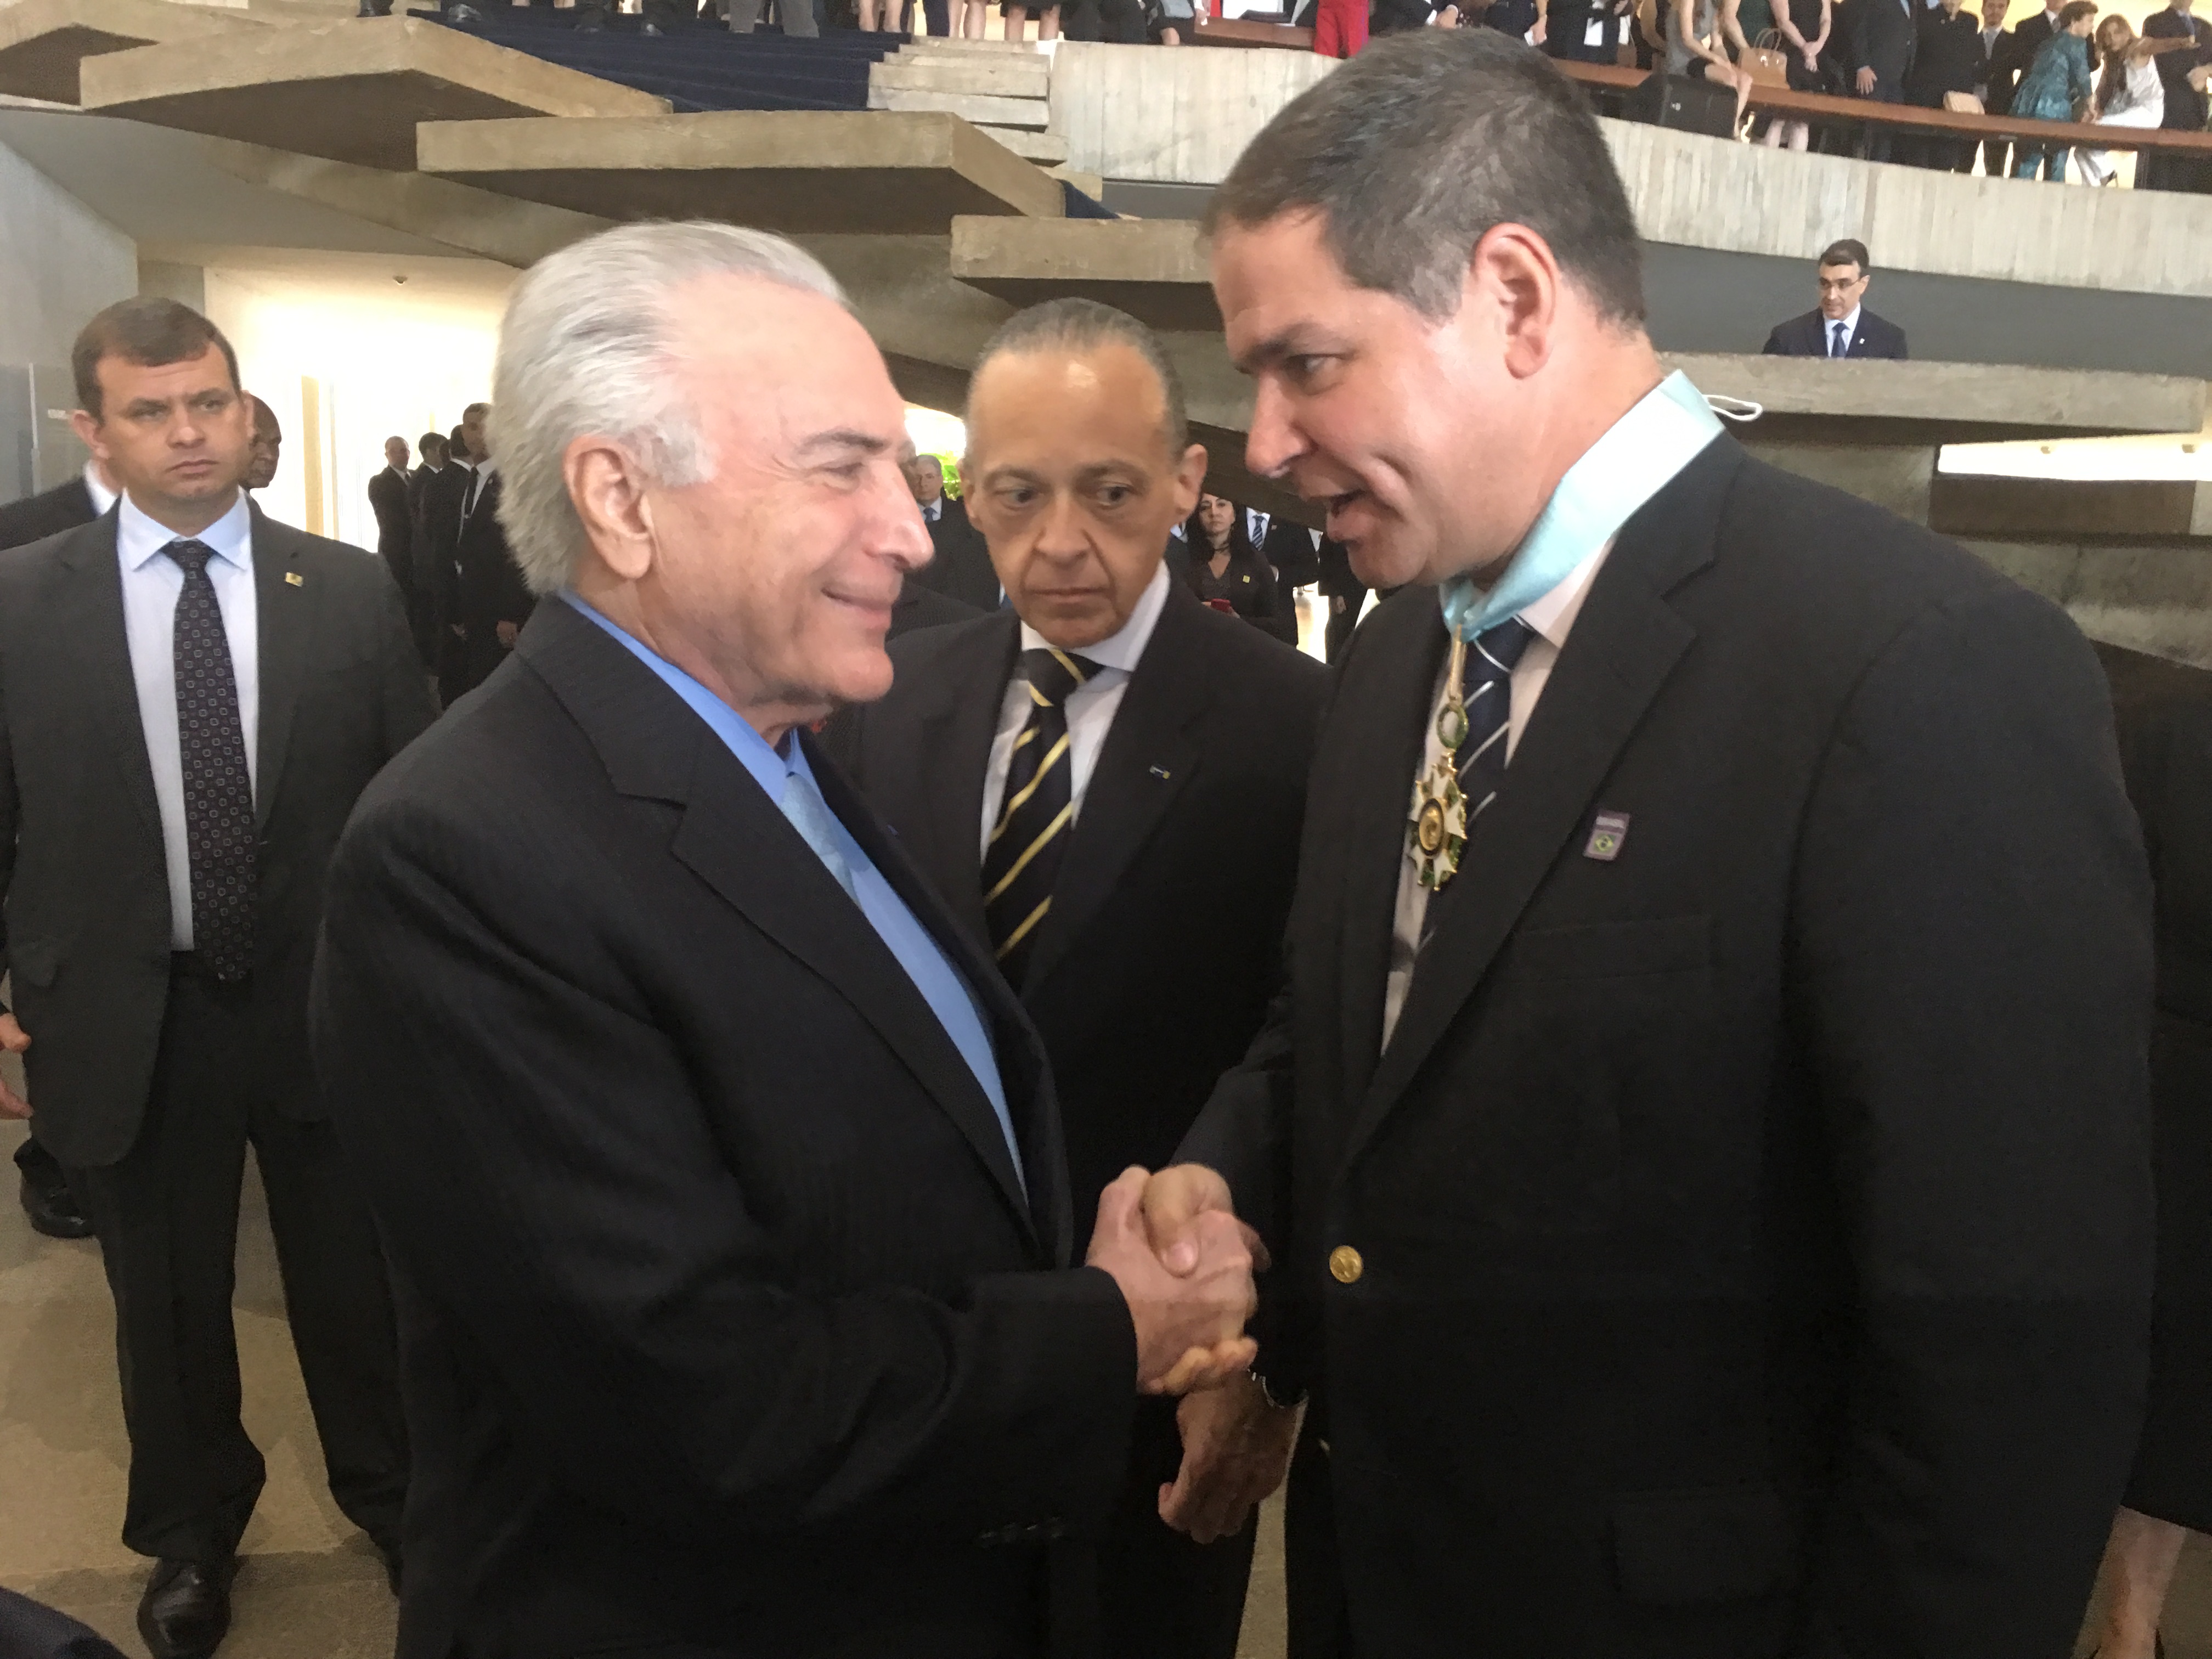 Luis Florido y presidente Temer discutieron emergencia migratoria entre Venezuela y Brasil